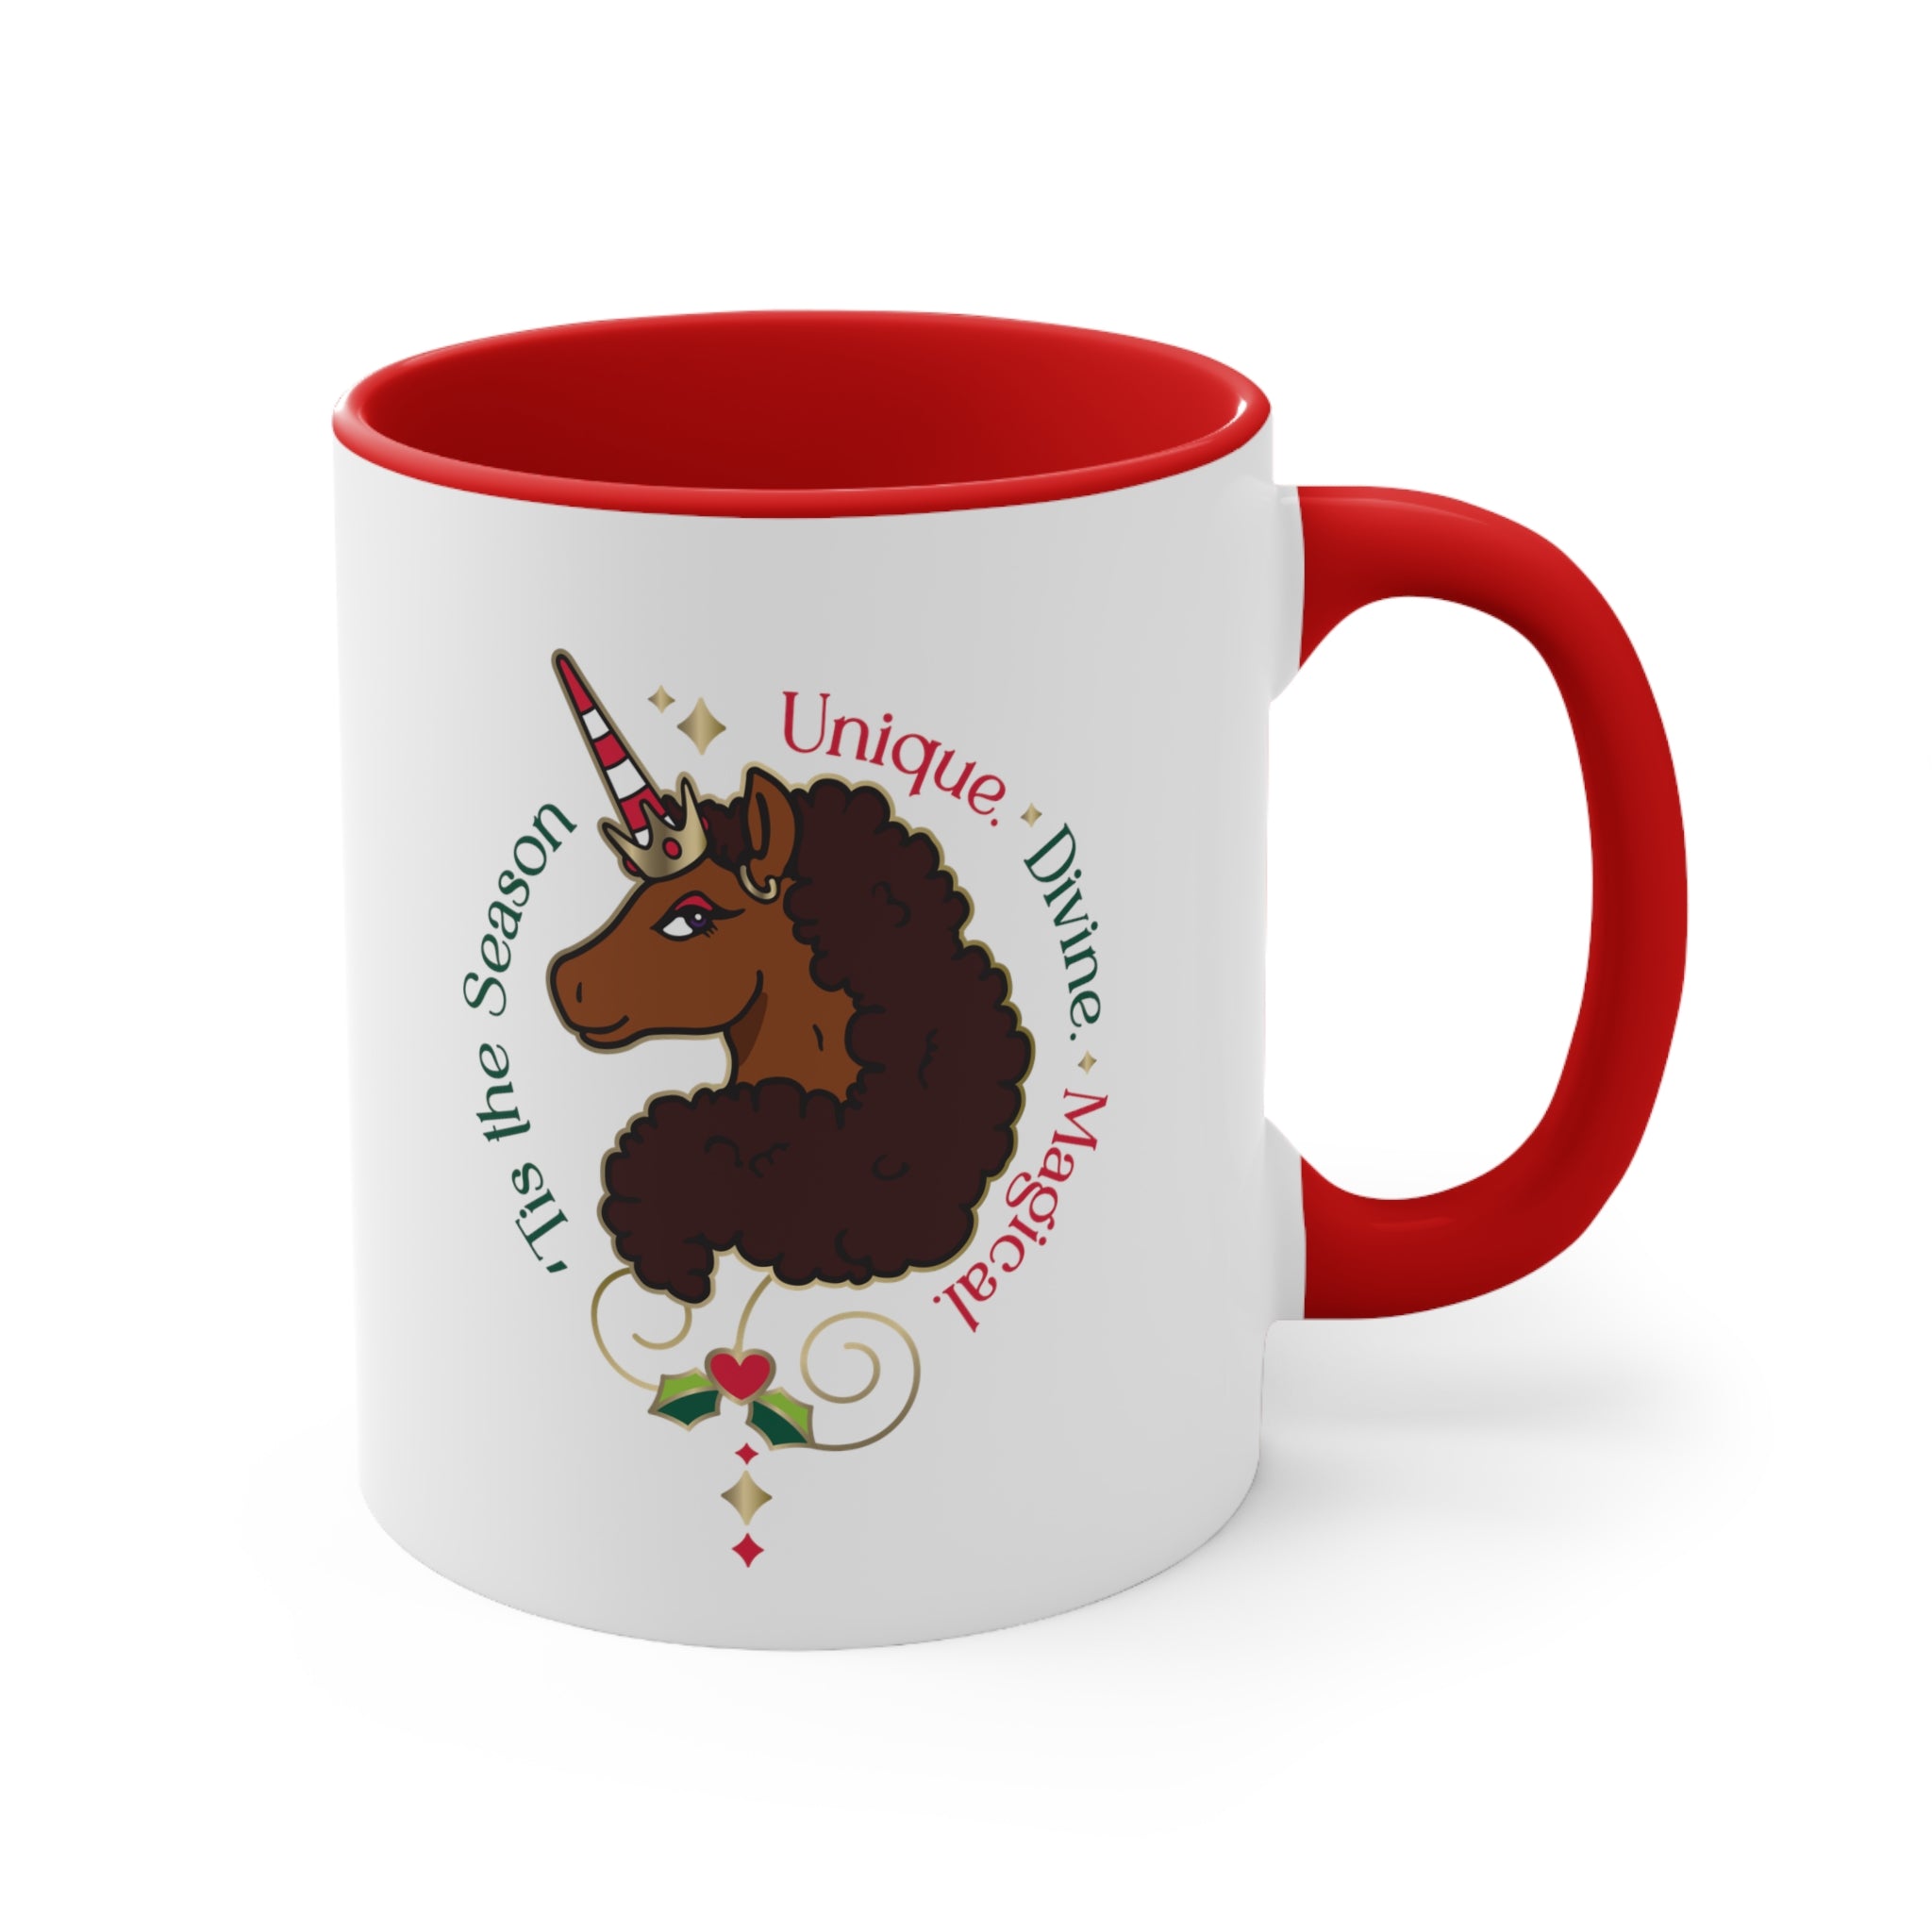 Afro Unicorn Holiday Mug